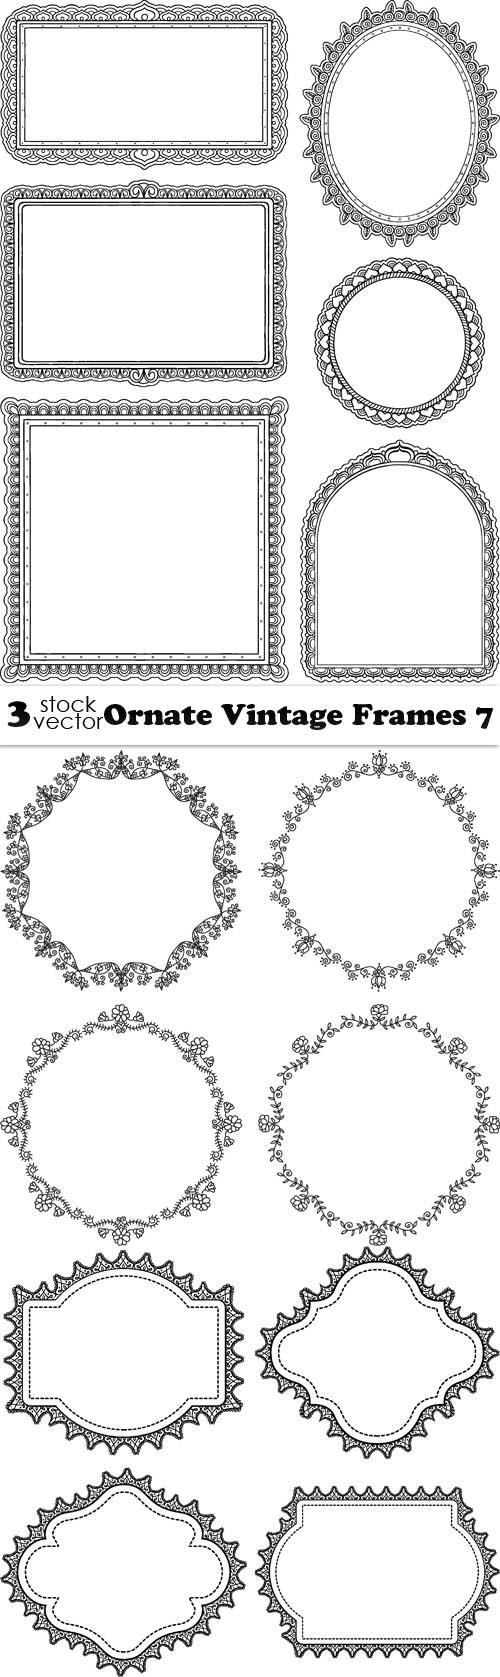 Vectors - Ornate Vintage Frames 7